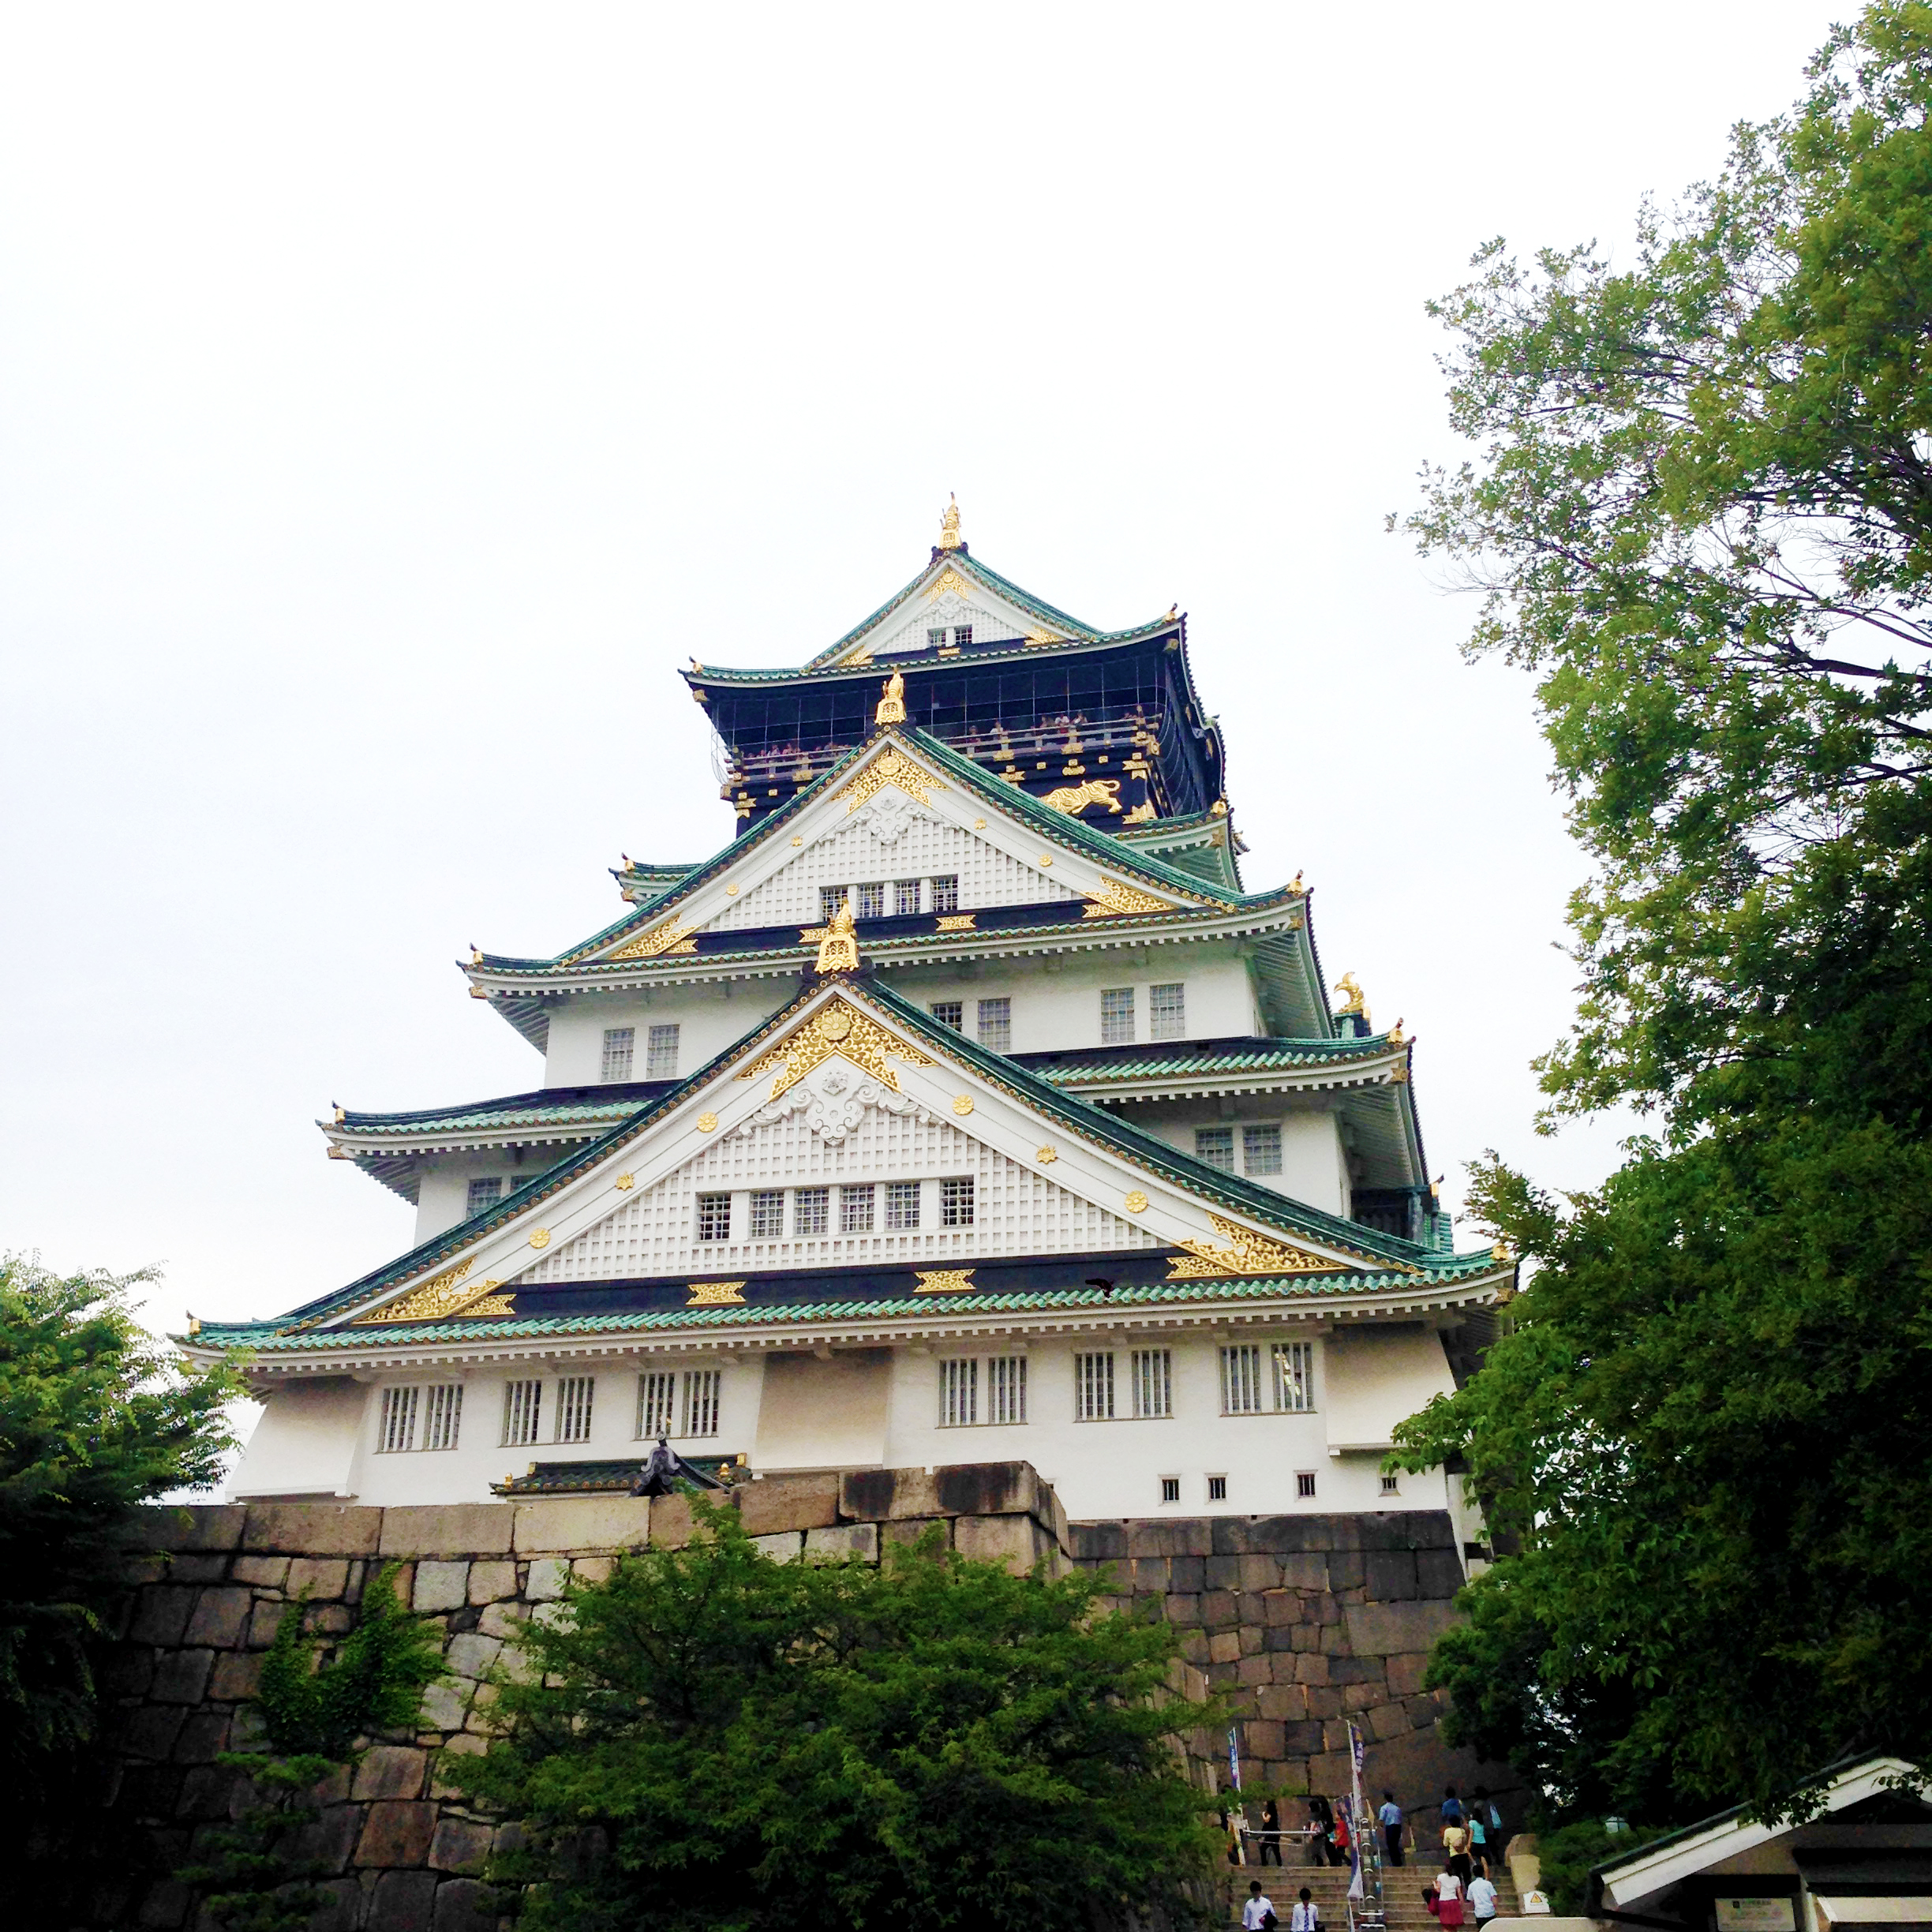 大阪城 1 無料写真 フリー素材のダウンロードサイト もある